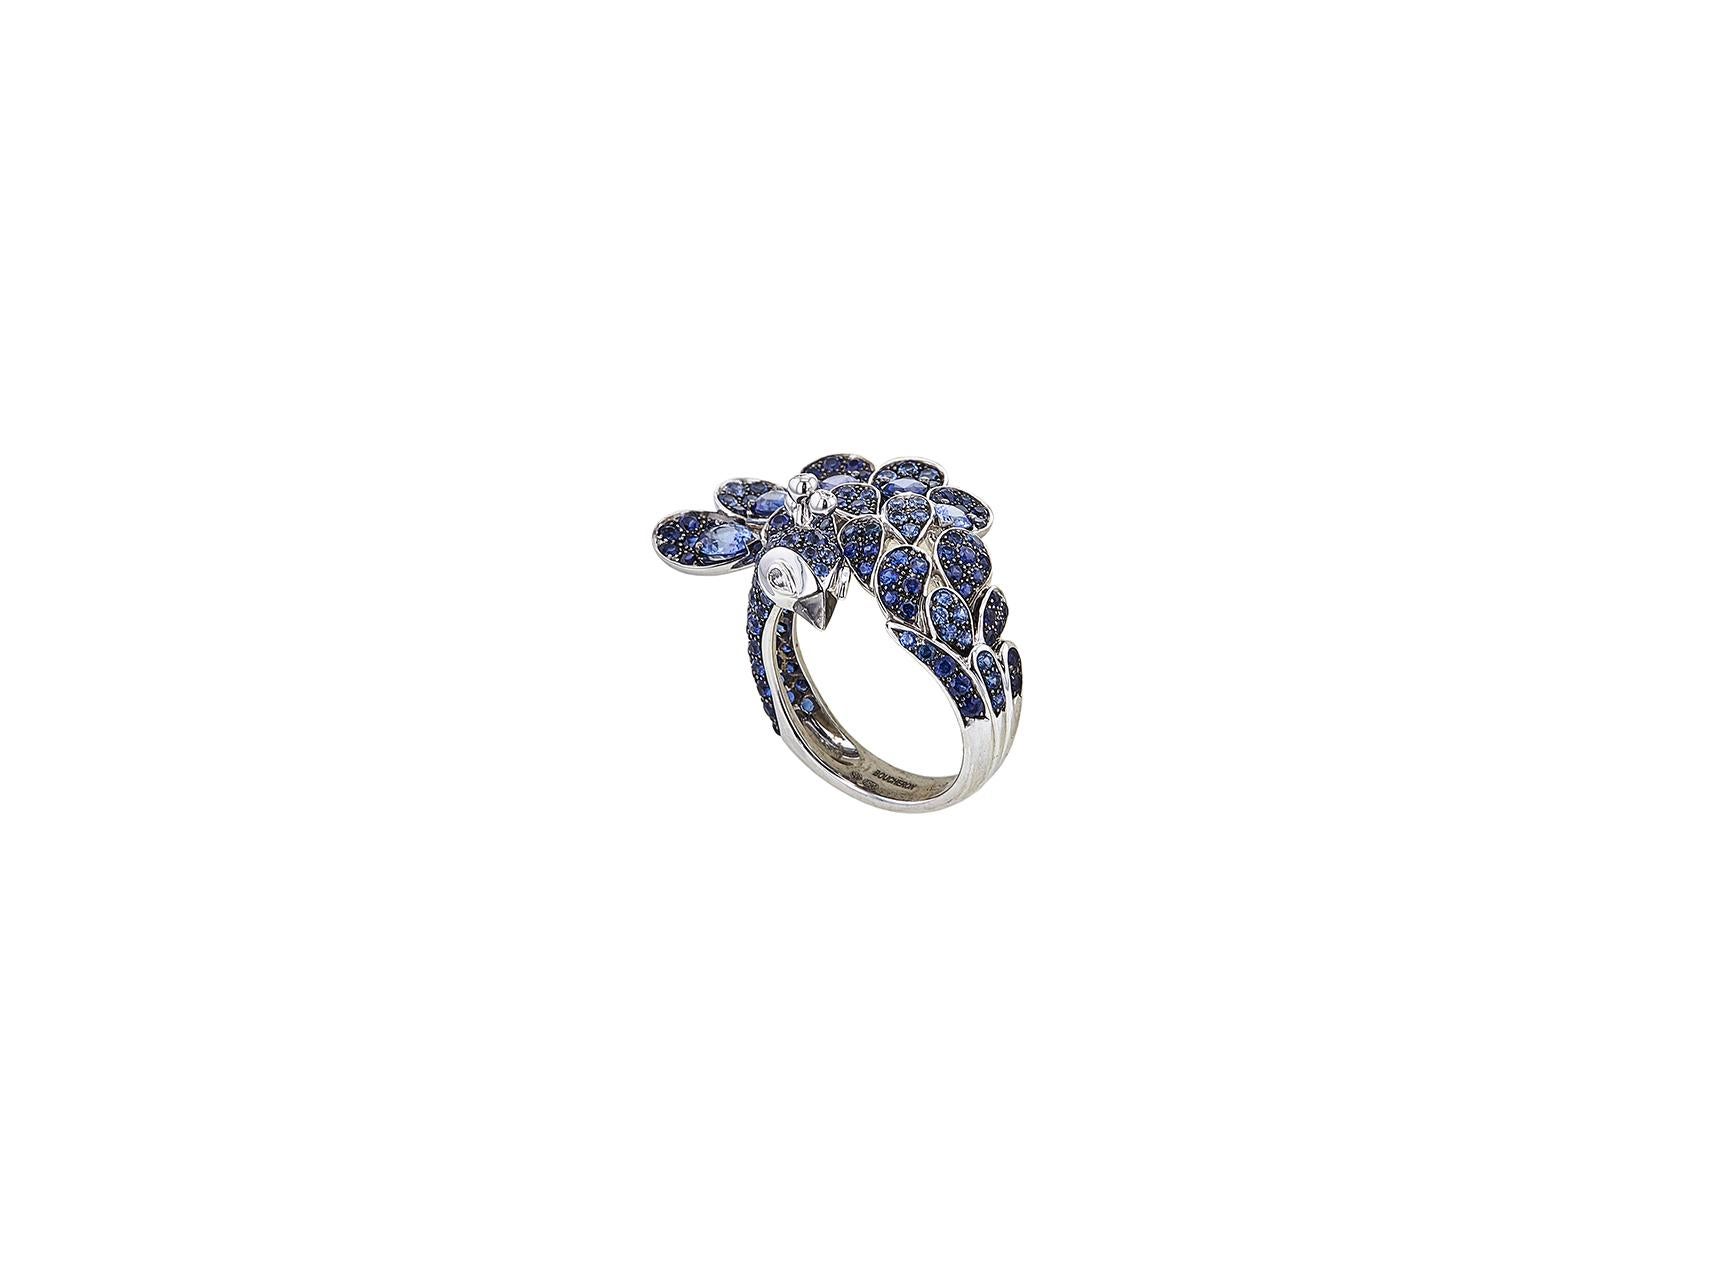 Der authentische Ring Héra von Boucheron aus 18 Karat Weißgold besticht durch eine atemberaubende Pfauenfassung mit runden und birnenförmigen blauen Saphiren im Pavé-Design. Die Augen des Pfaus bestehen aus birnenförmigen Diamanten mit einem